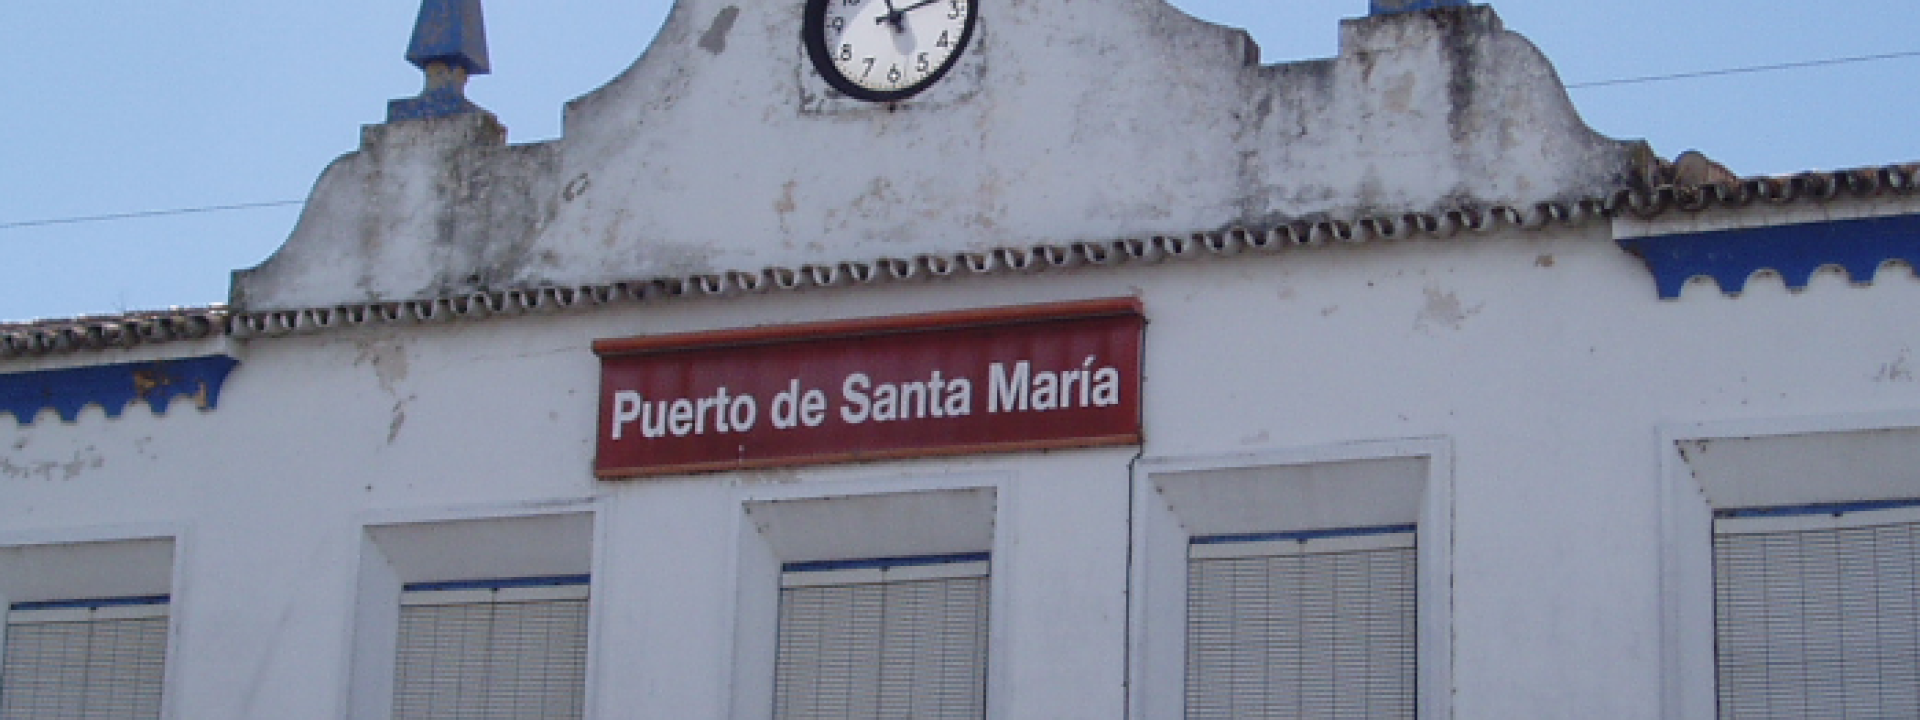 Fachada de la estación del Puerto de Santa María con un reloj en la parte superior y ventanas blancas